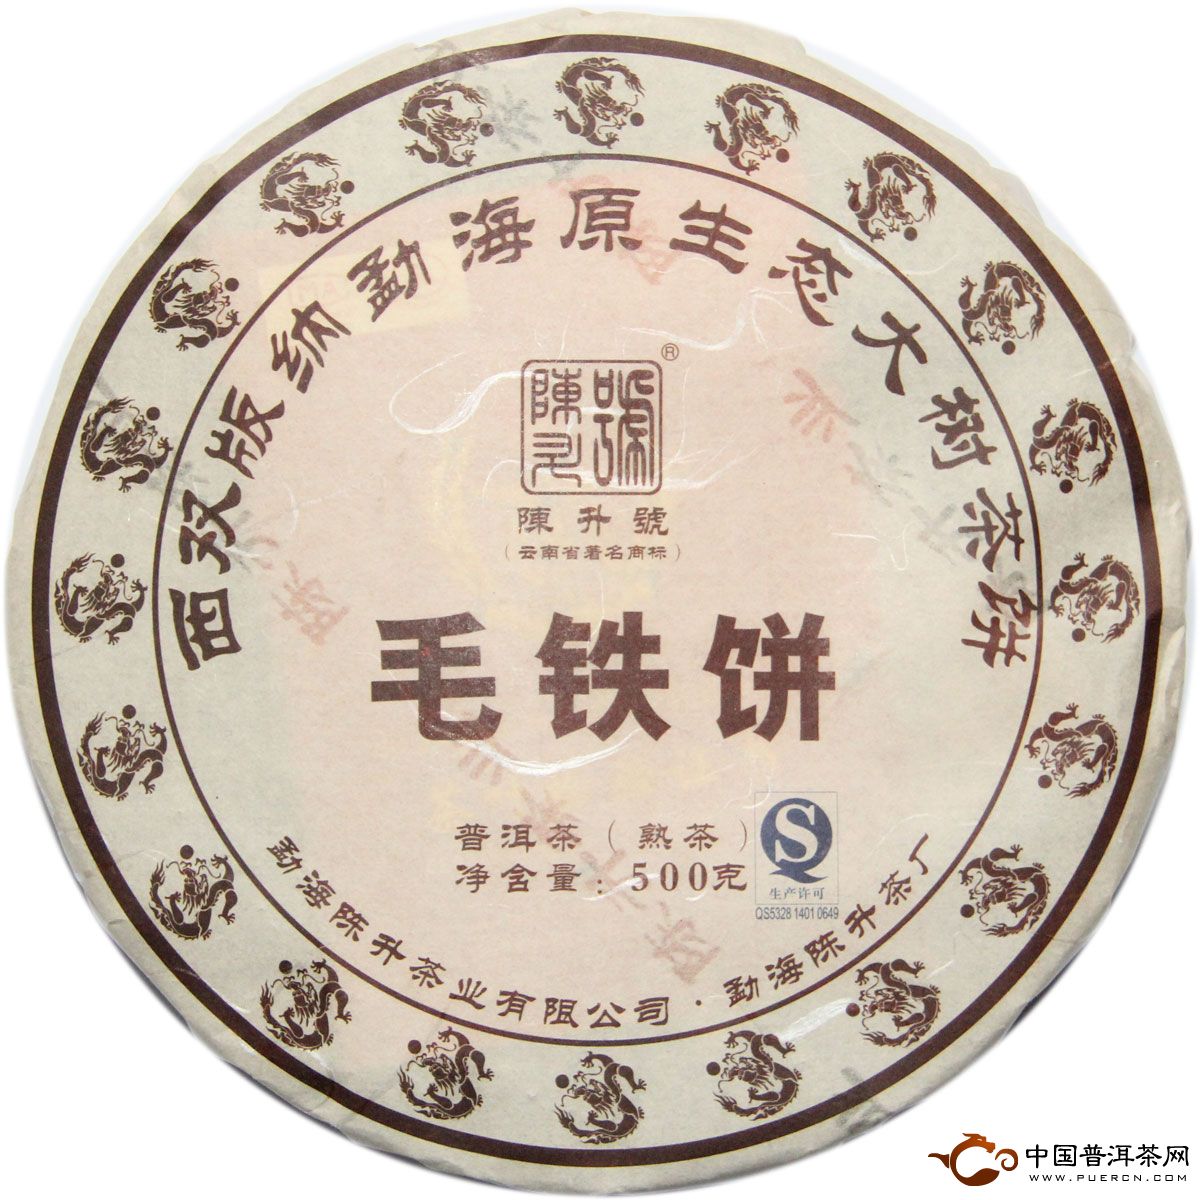 2012年陈升号毛铁饼/熟茶/500克